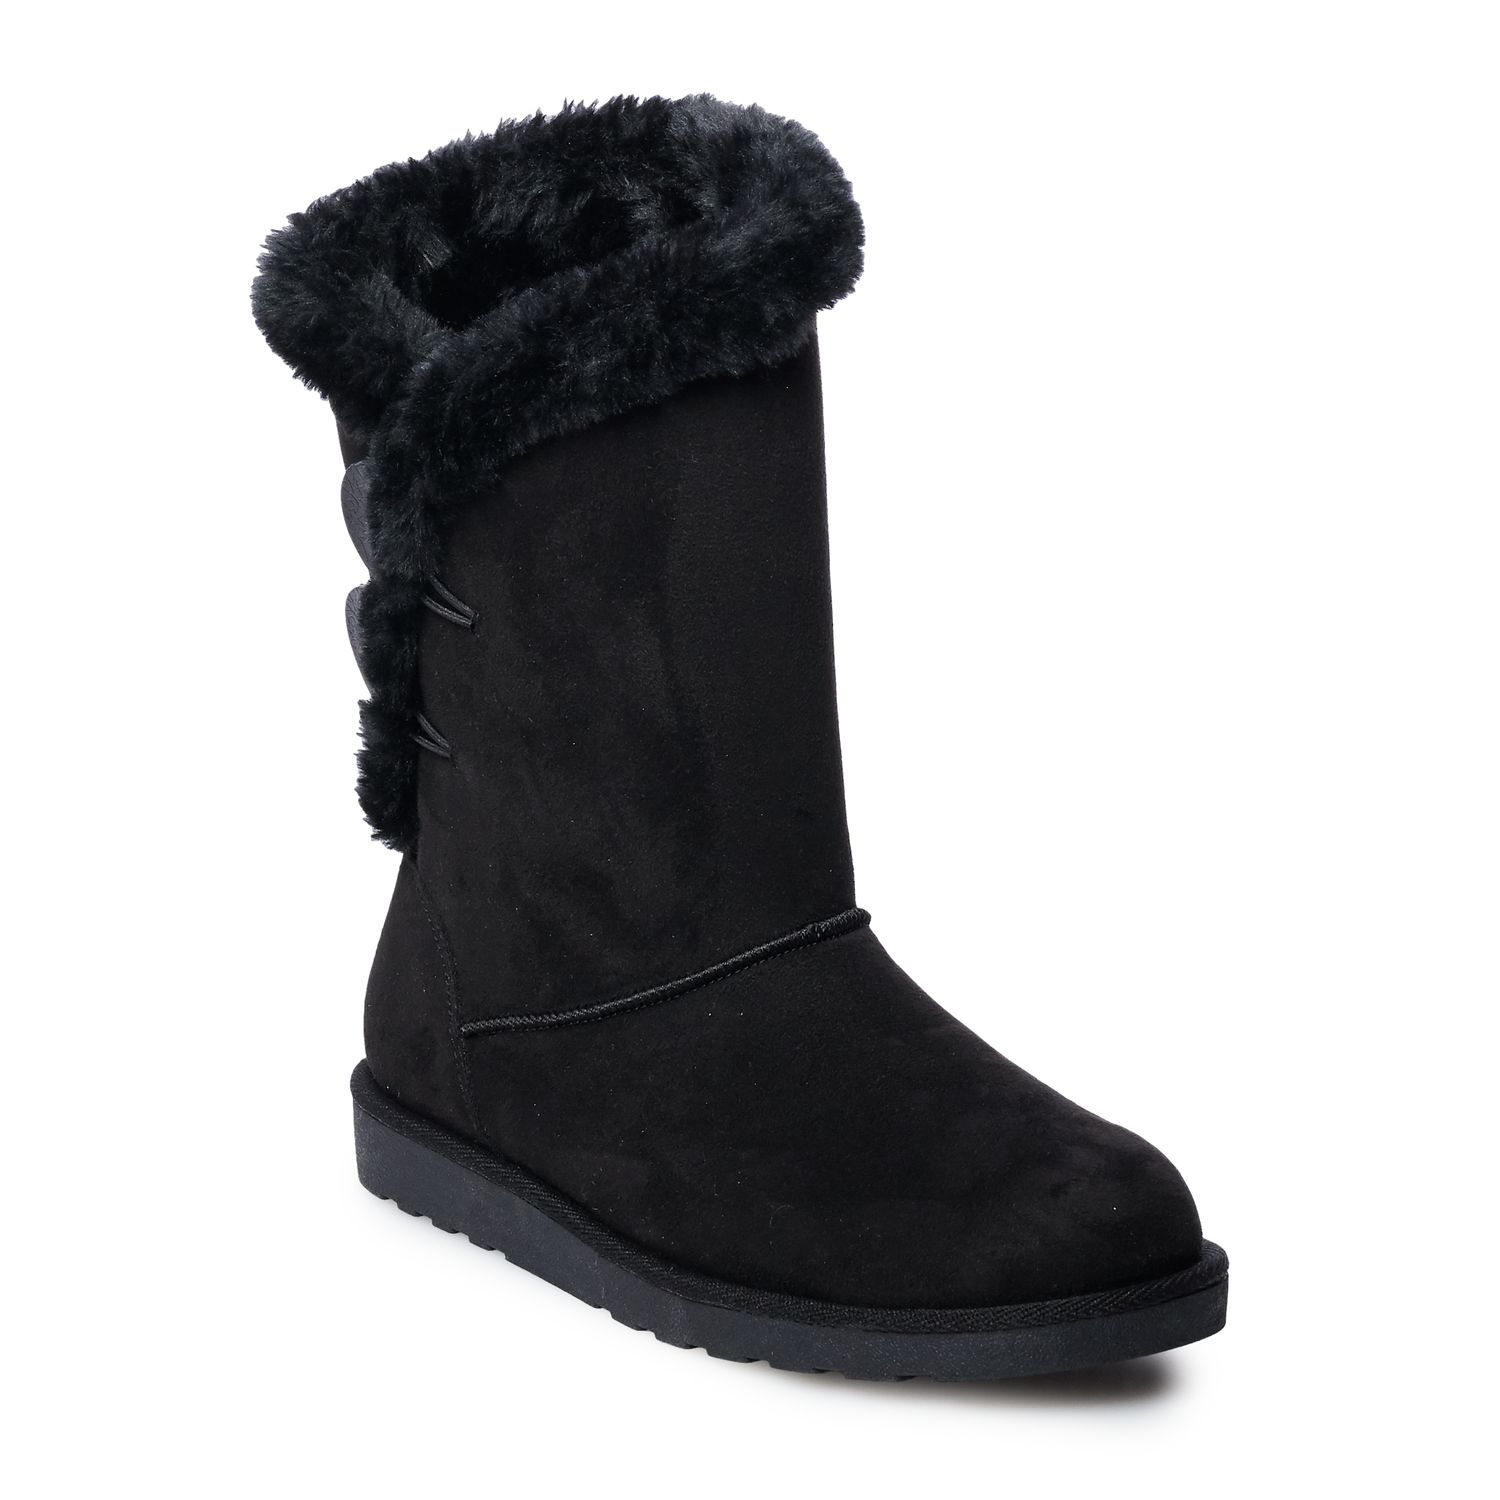 SO® Junebug Women's Winter Boots | Kohls